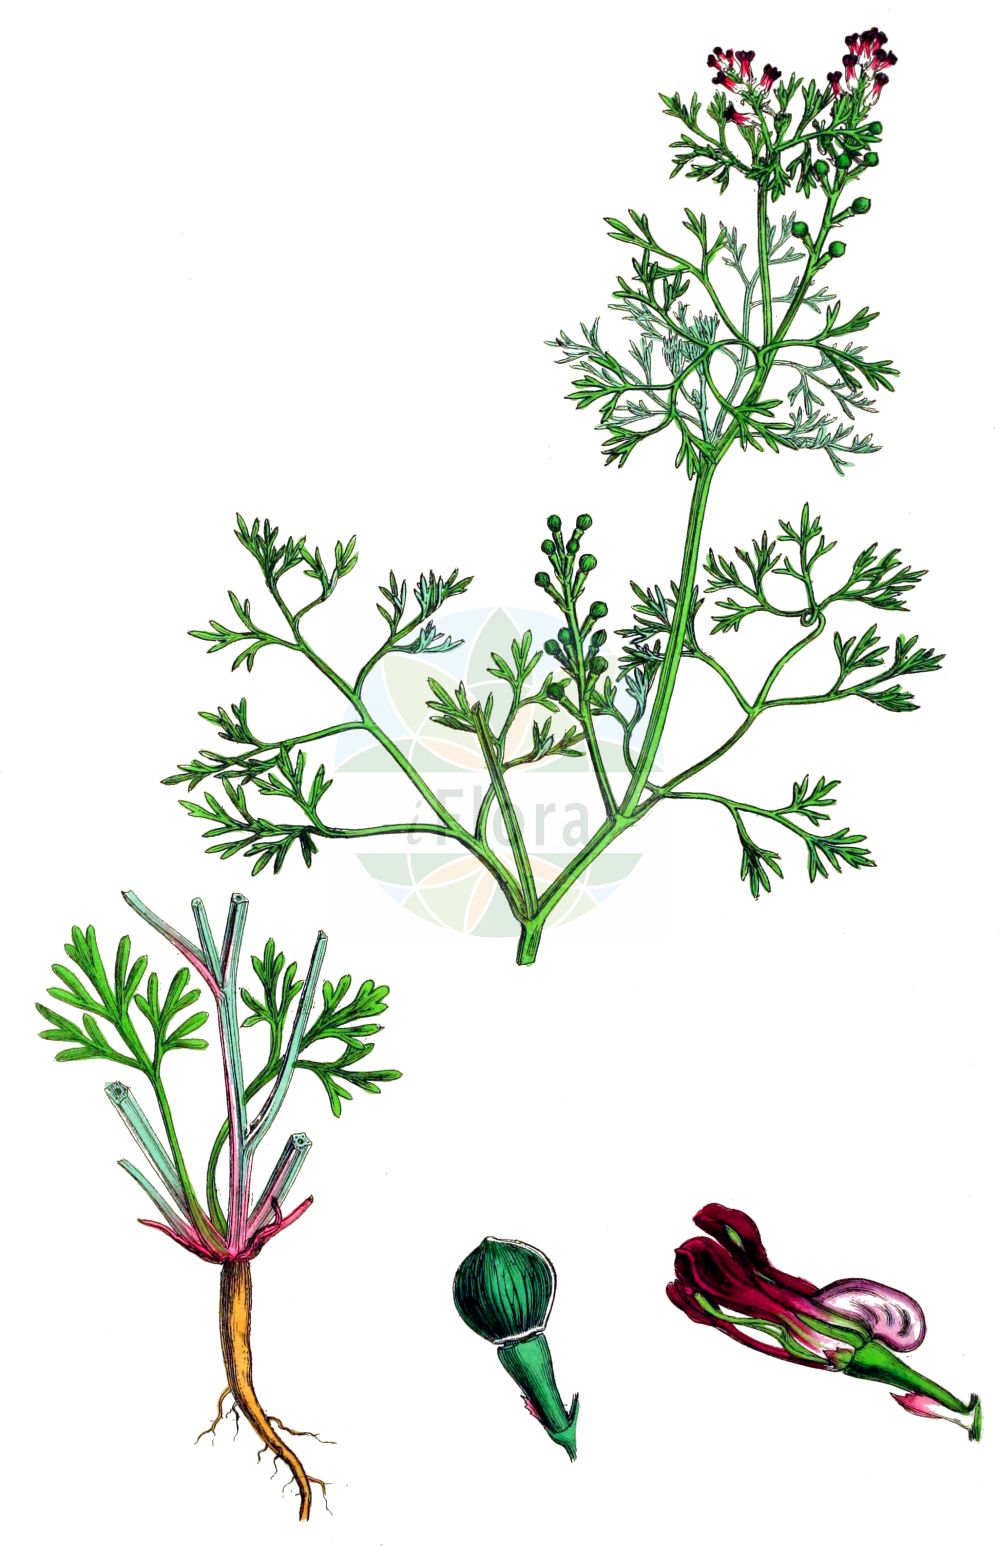 Historische Abbildung von Fumaria vaillantii (Blasser Erdrauch - Few-flowered Fumitory). Das Bild zeigt Blatt, Bluete, Frucht und Same. ---- Historical Drawing of Fumaria vaillantii (Blasser Erdrauch - Few-flowered Fumitory). The image is showing leaf, flower, fruit and seed.(Fumaria vaillantii,Blasser Erdrauch,Few-flowered Fumitory,Fumaria vaillantii,Blasser Erdrauch,Schramm-Erdrauch,Vaillants Erdrauch,Few-flowered Fumitory,Earthsmoke,Fumaria,Erdrauch,Fumitory,Papaveraceae,Mohngewächse,Poppy family,Blatt,Bluete,Frucht,Same,leaf,flower,fruit,seed,Sowerby (1790-1813))